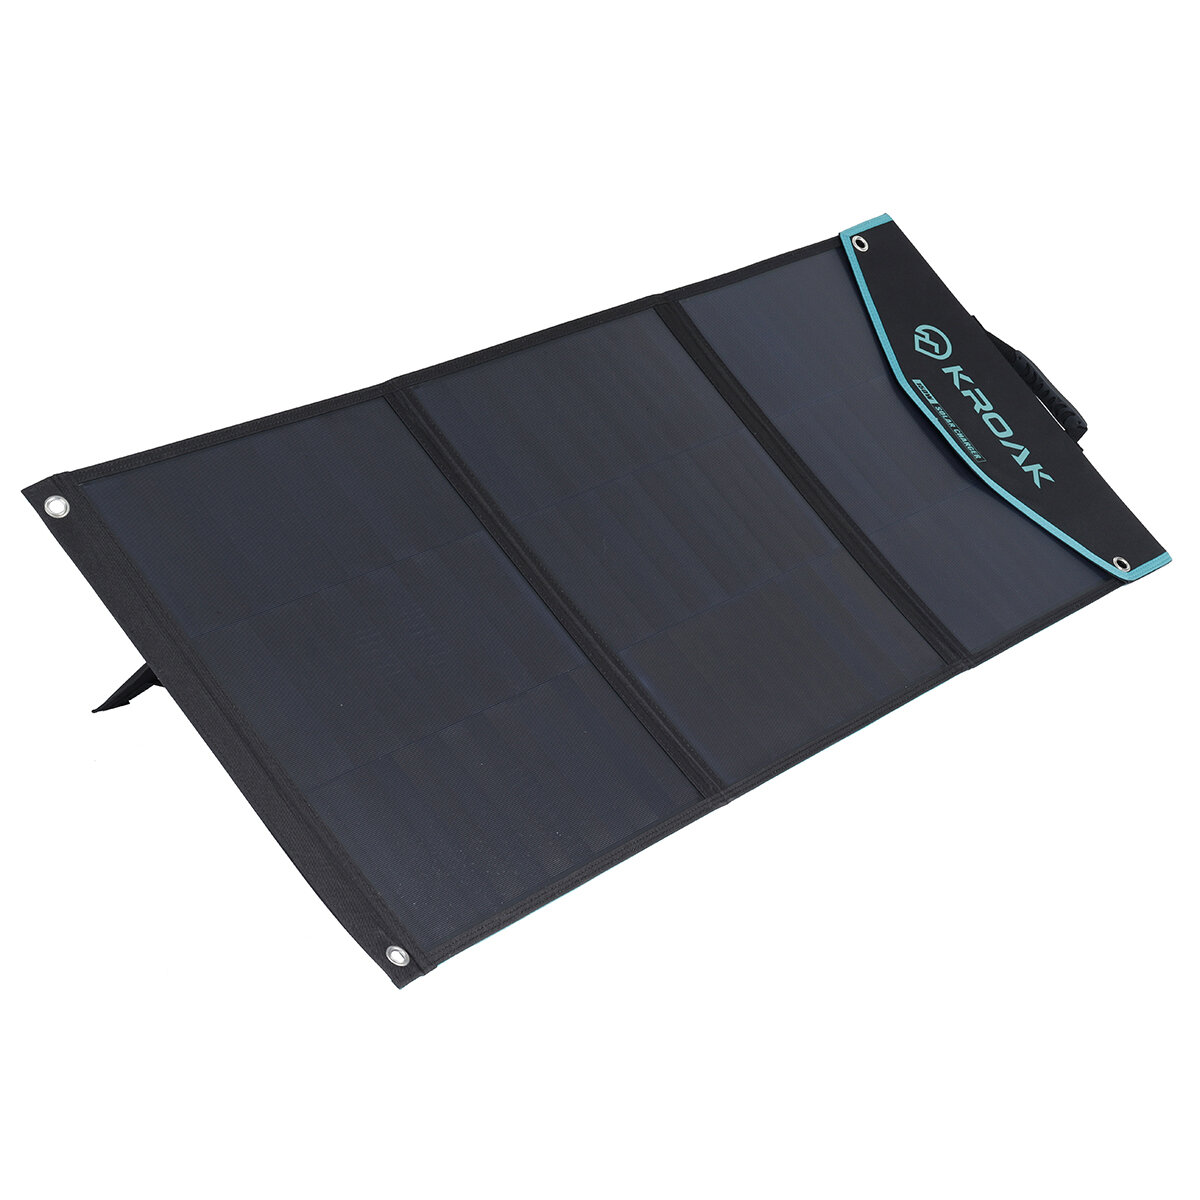 Panel solarny KROAK K-SP05 150W 19.8V z EU za $124.99 / ~618zł